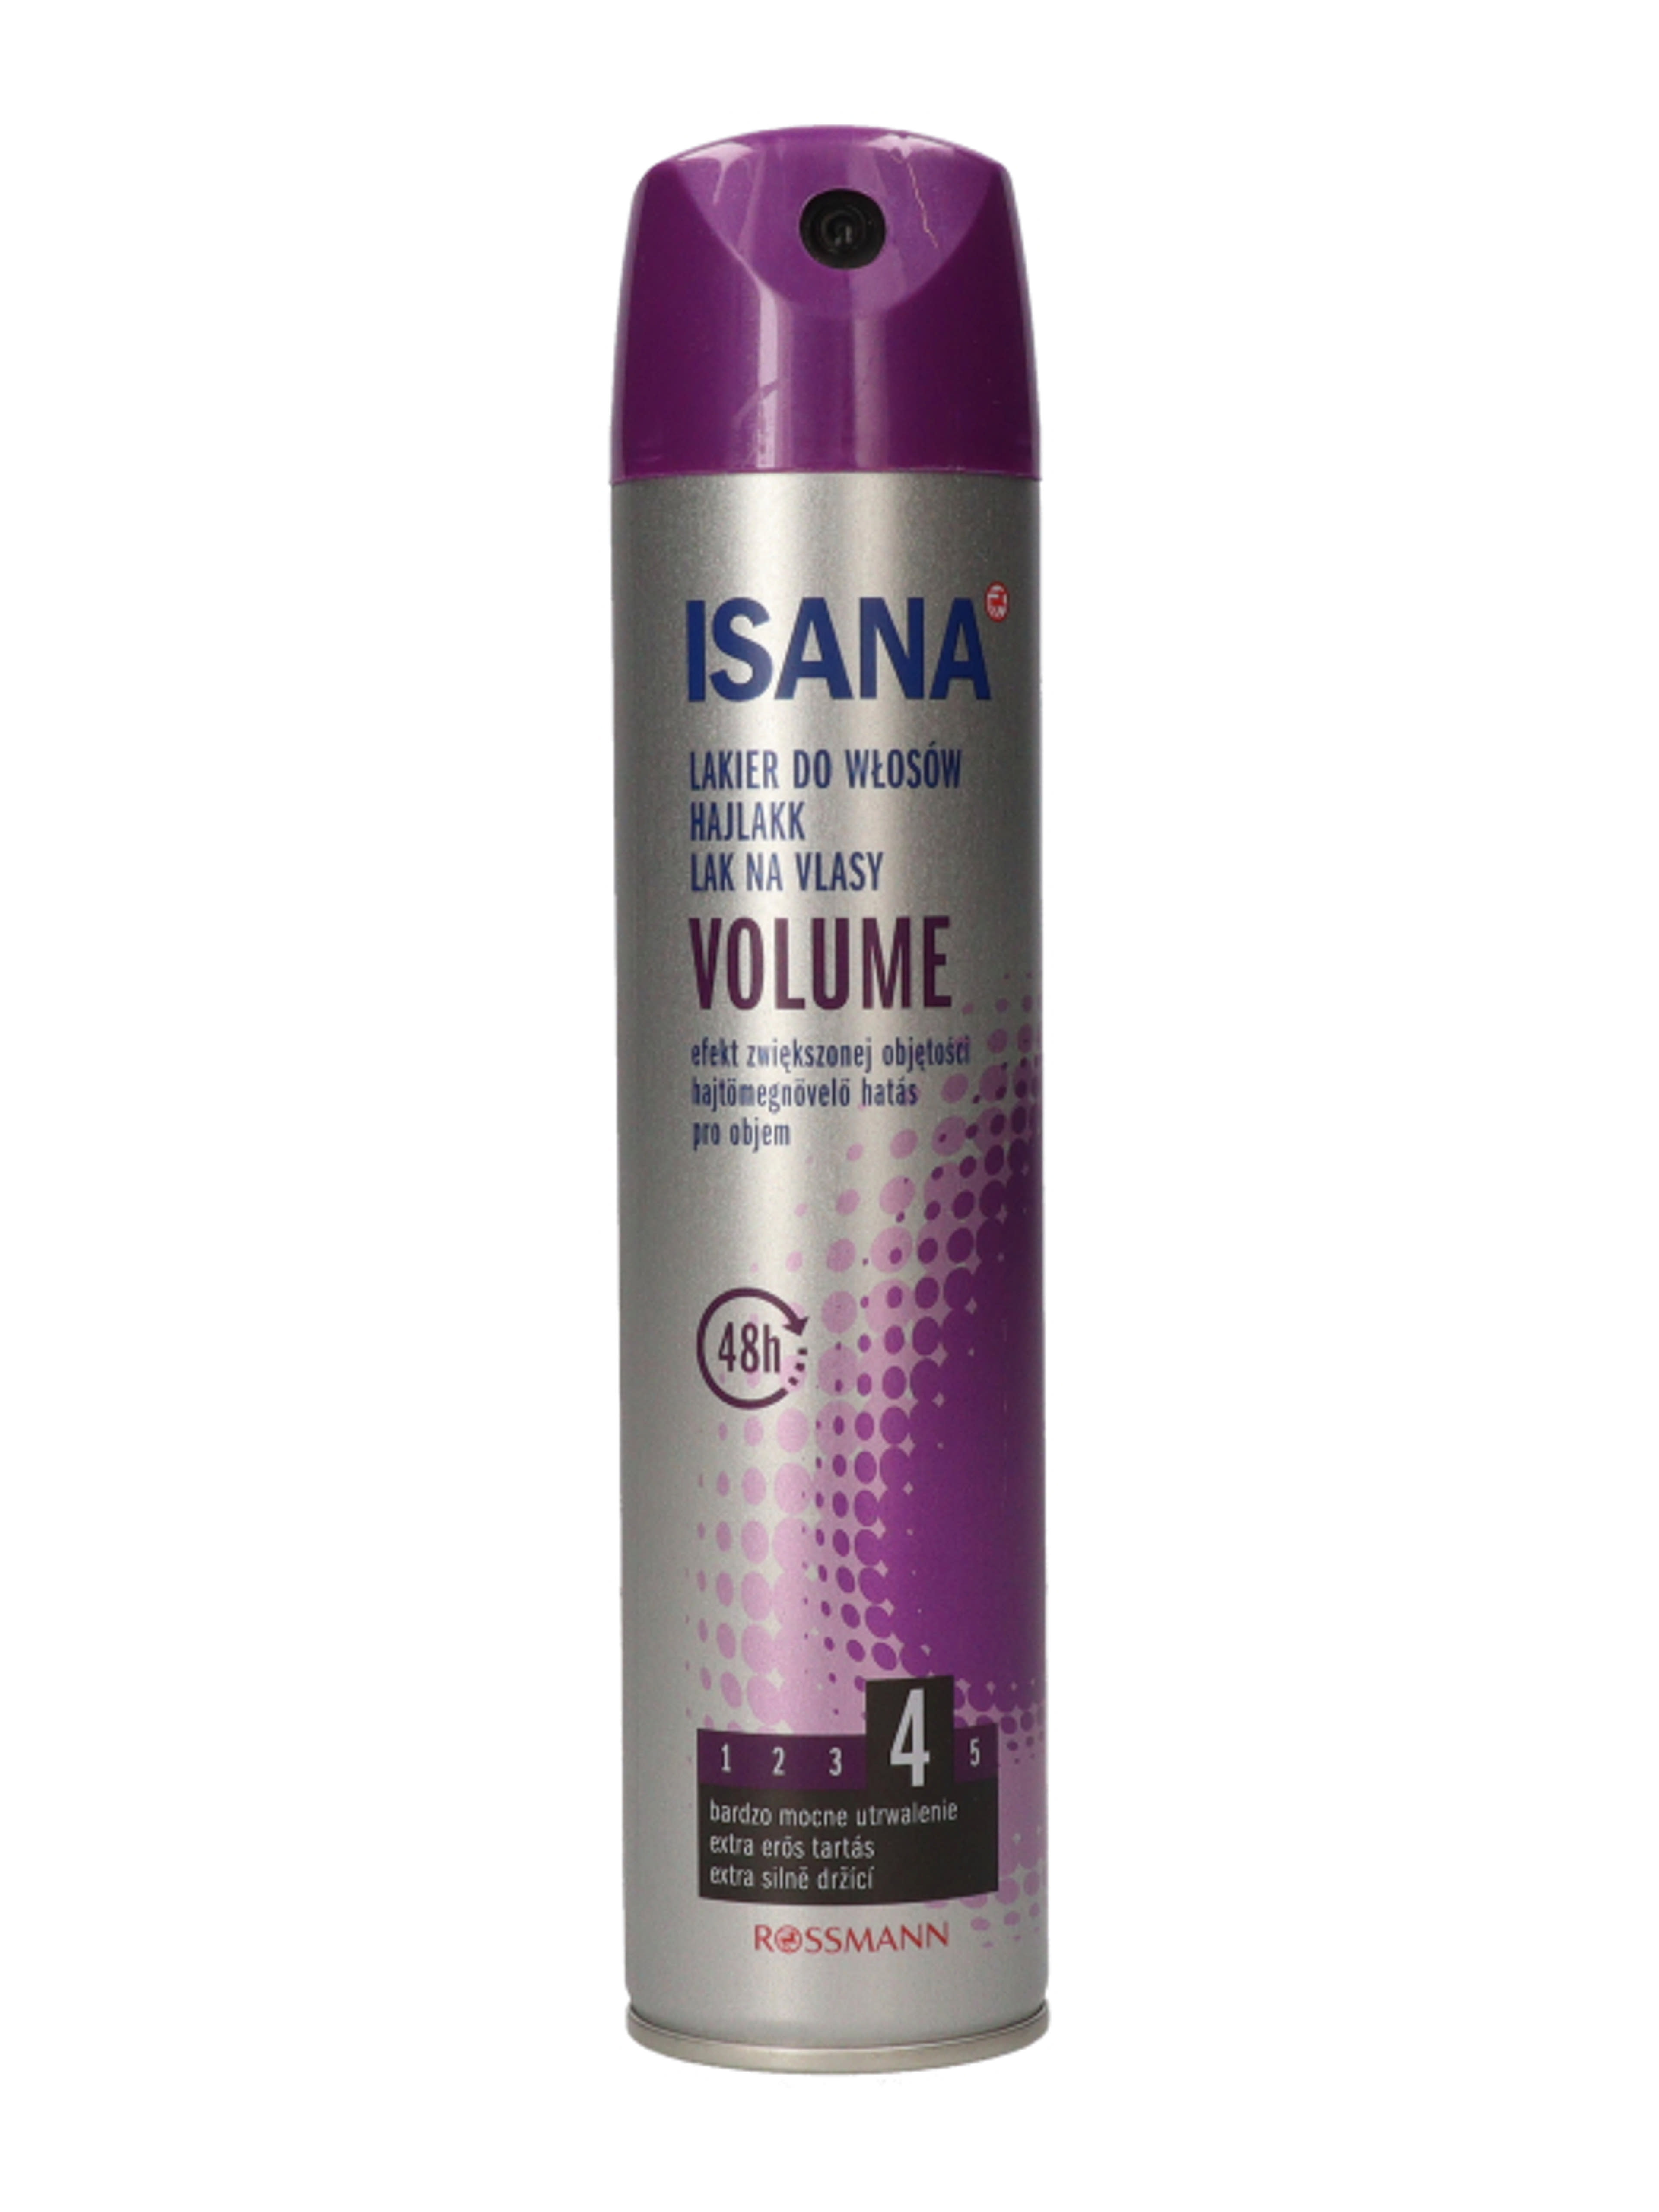 Isana Hair Volume Up hajlakk - 250 ml-3